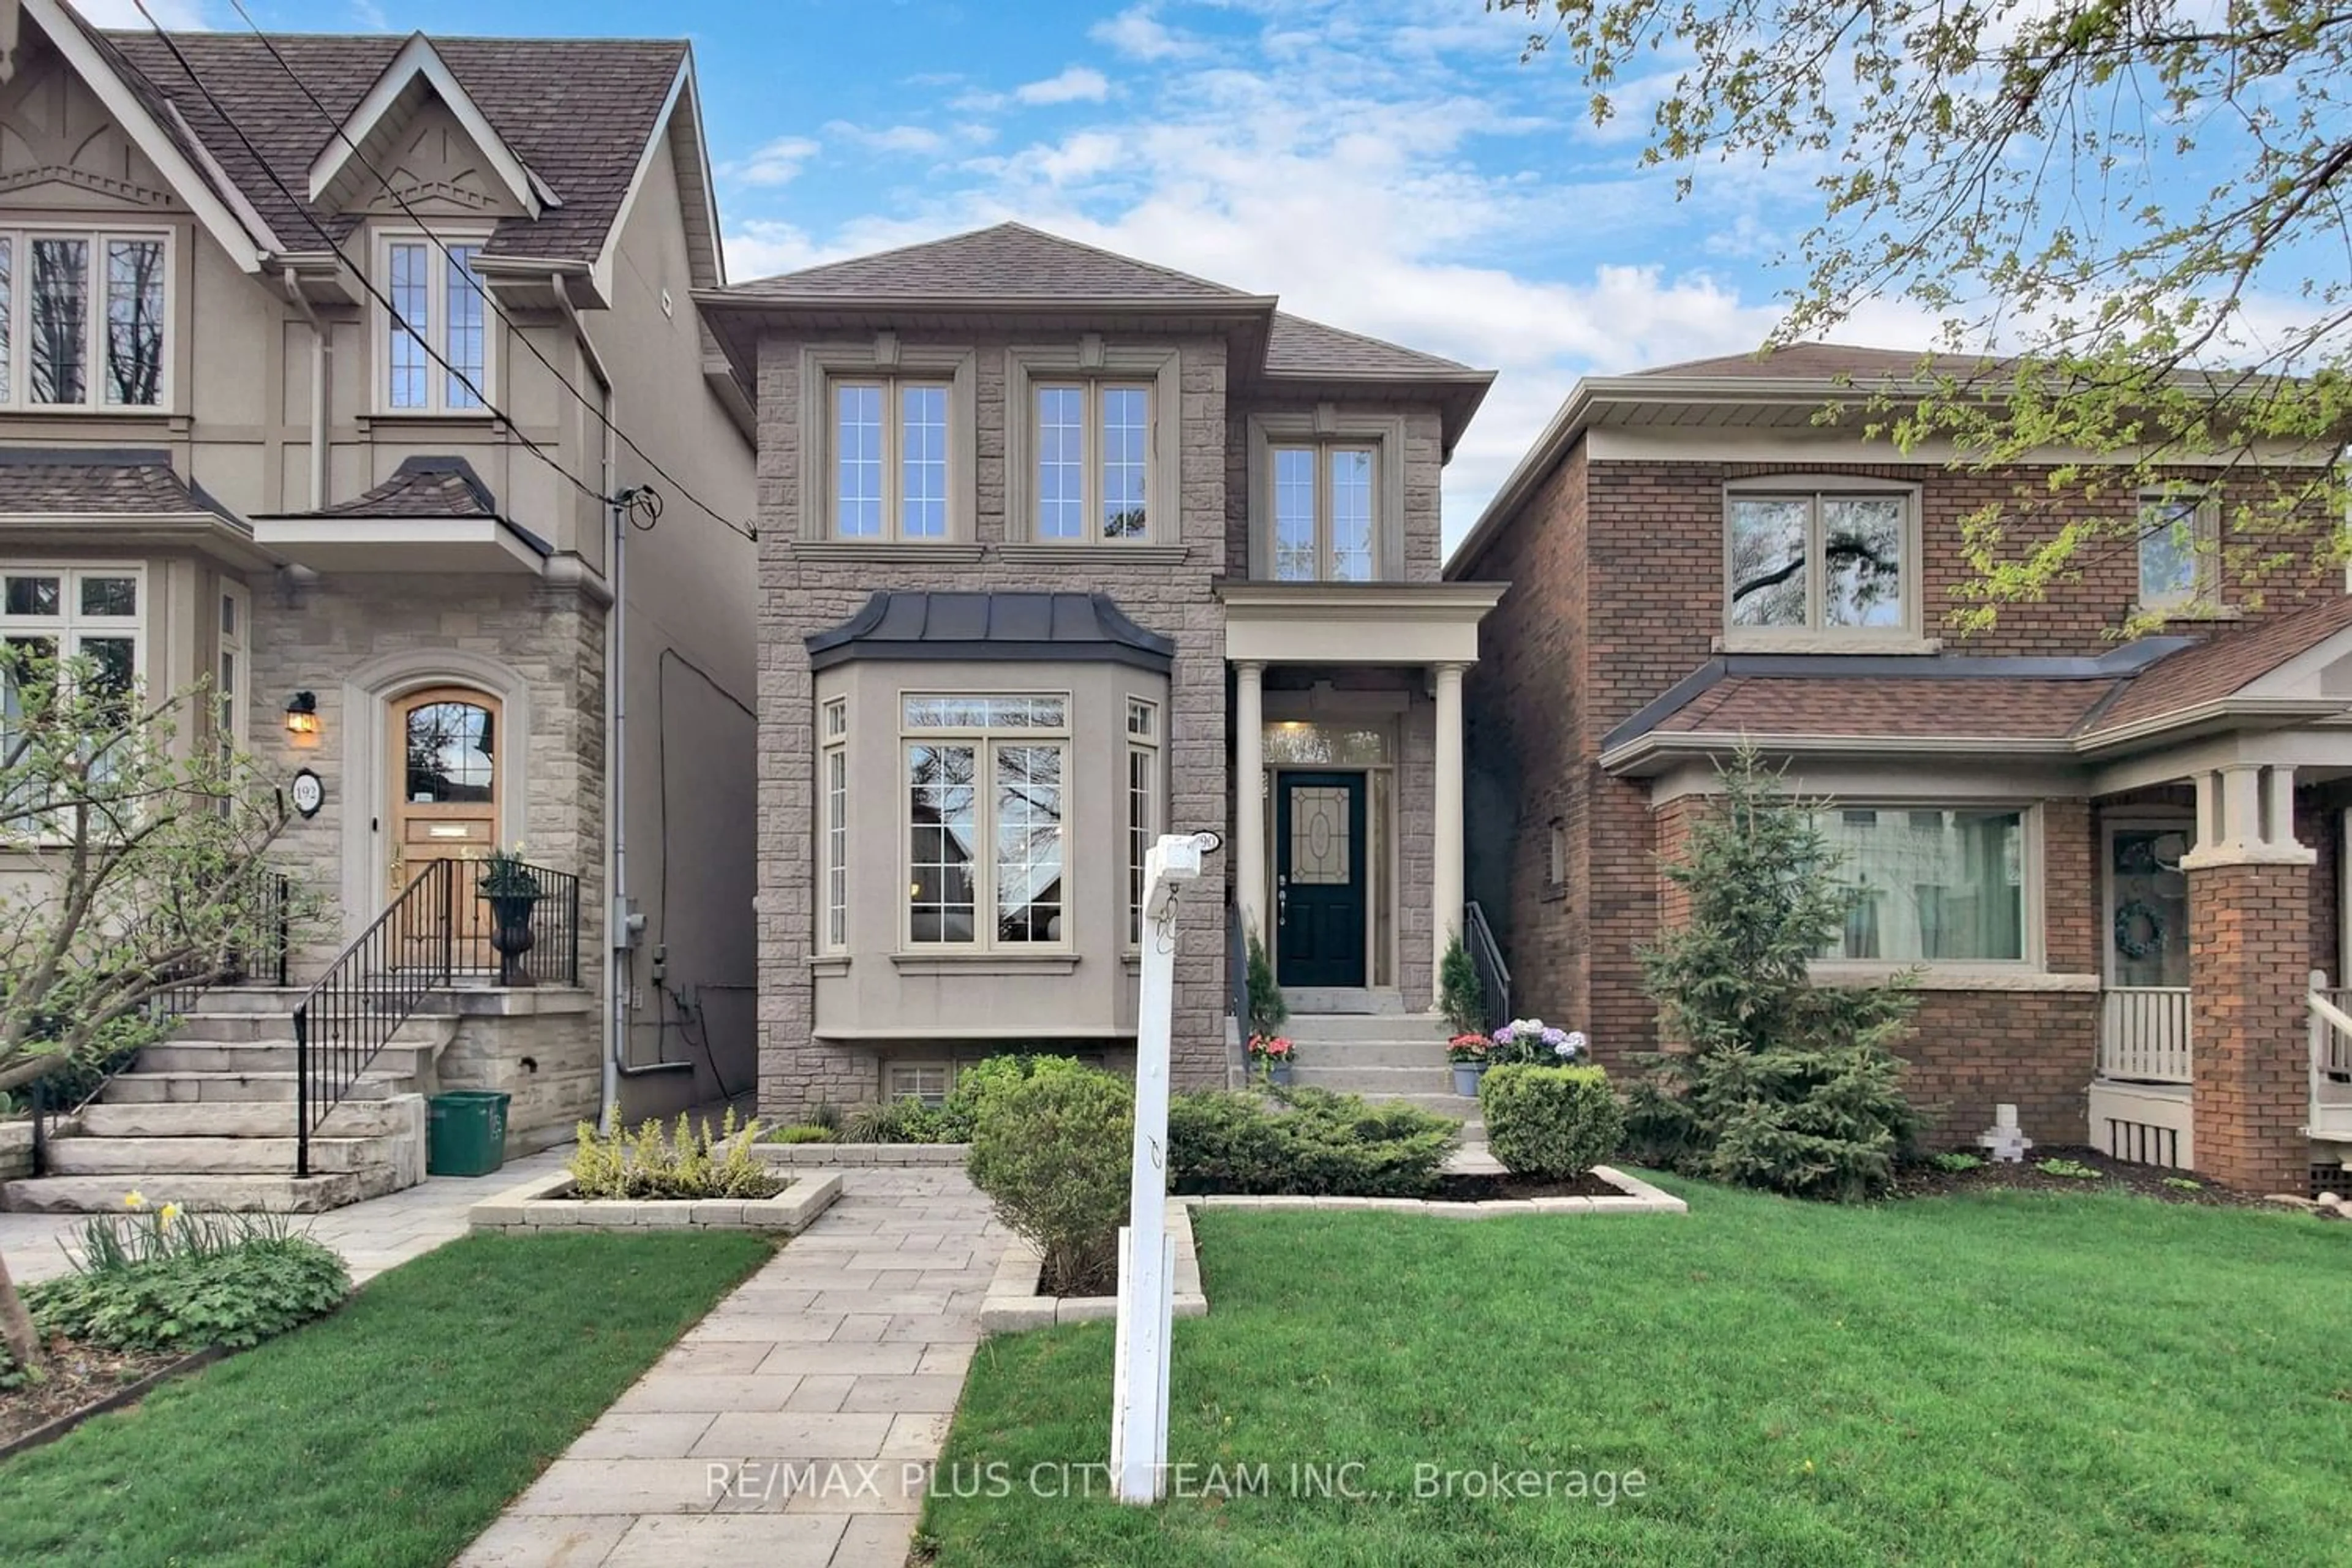 Home with brick exterior material for 190 Douglas Ave, Toronto Ontario M5M 1G6